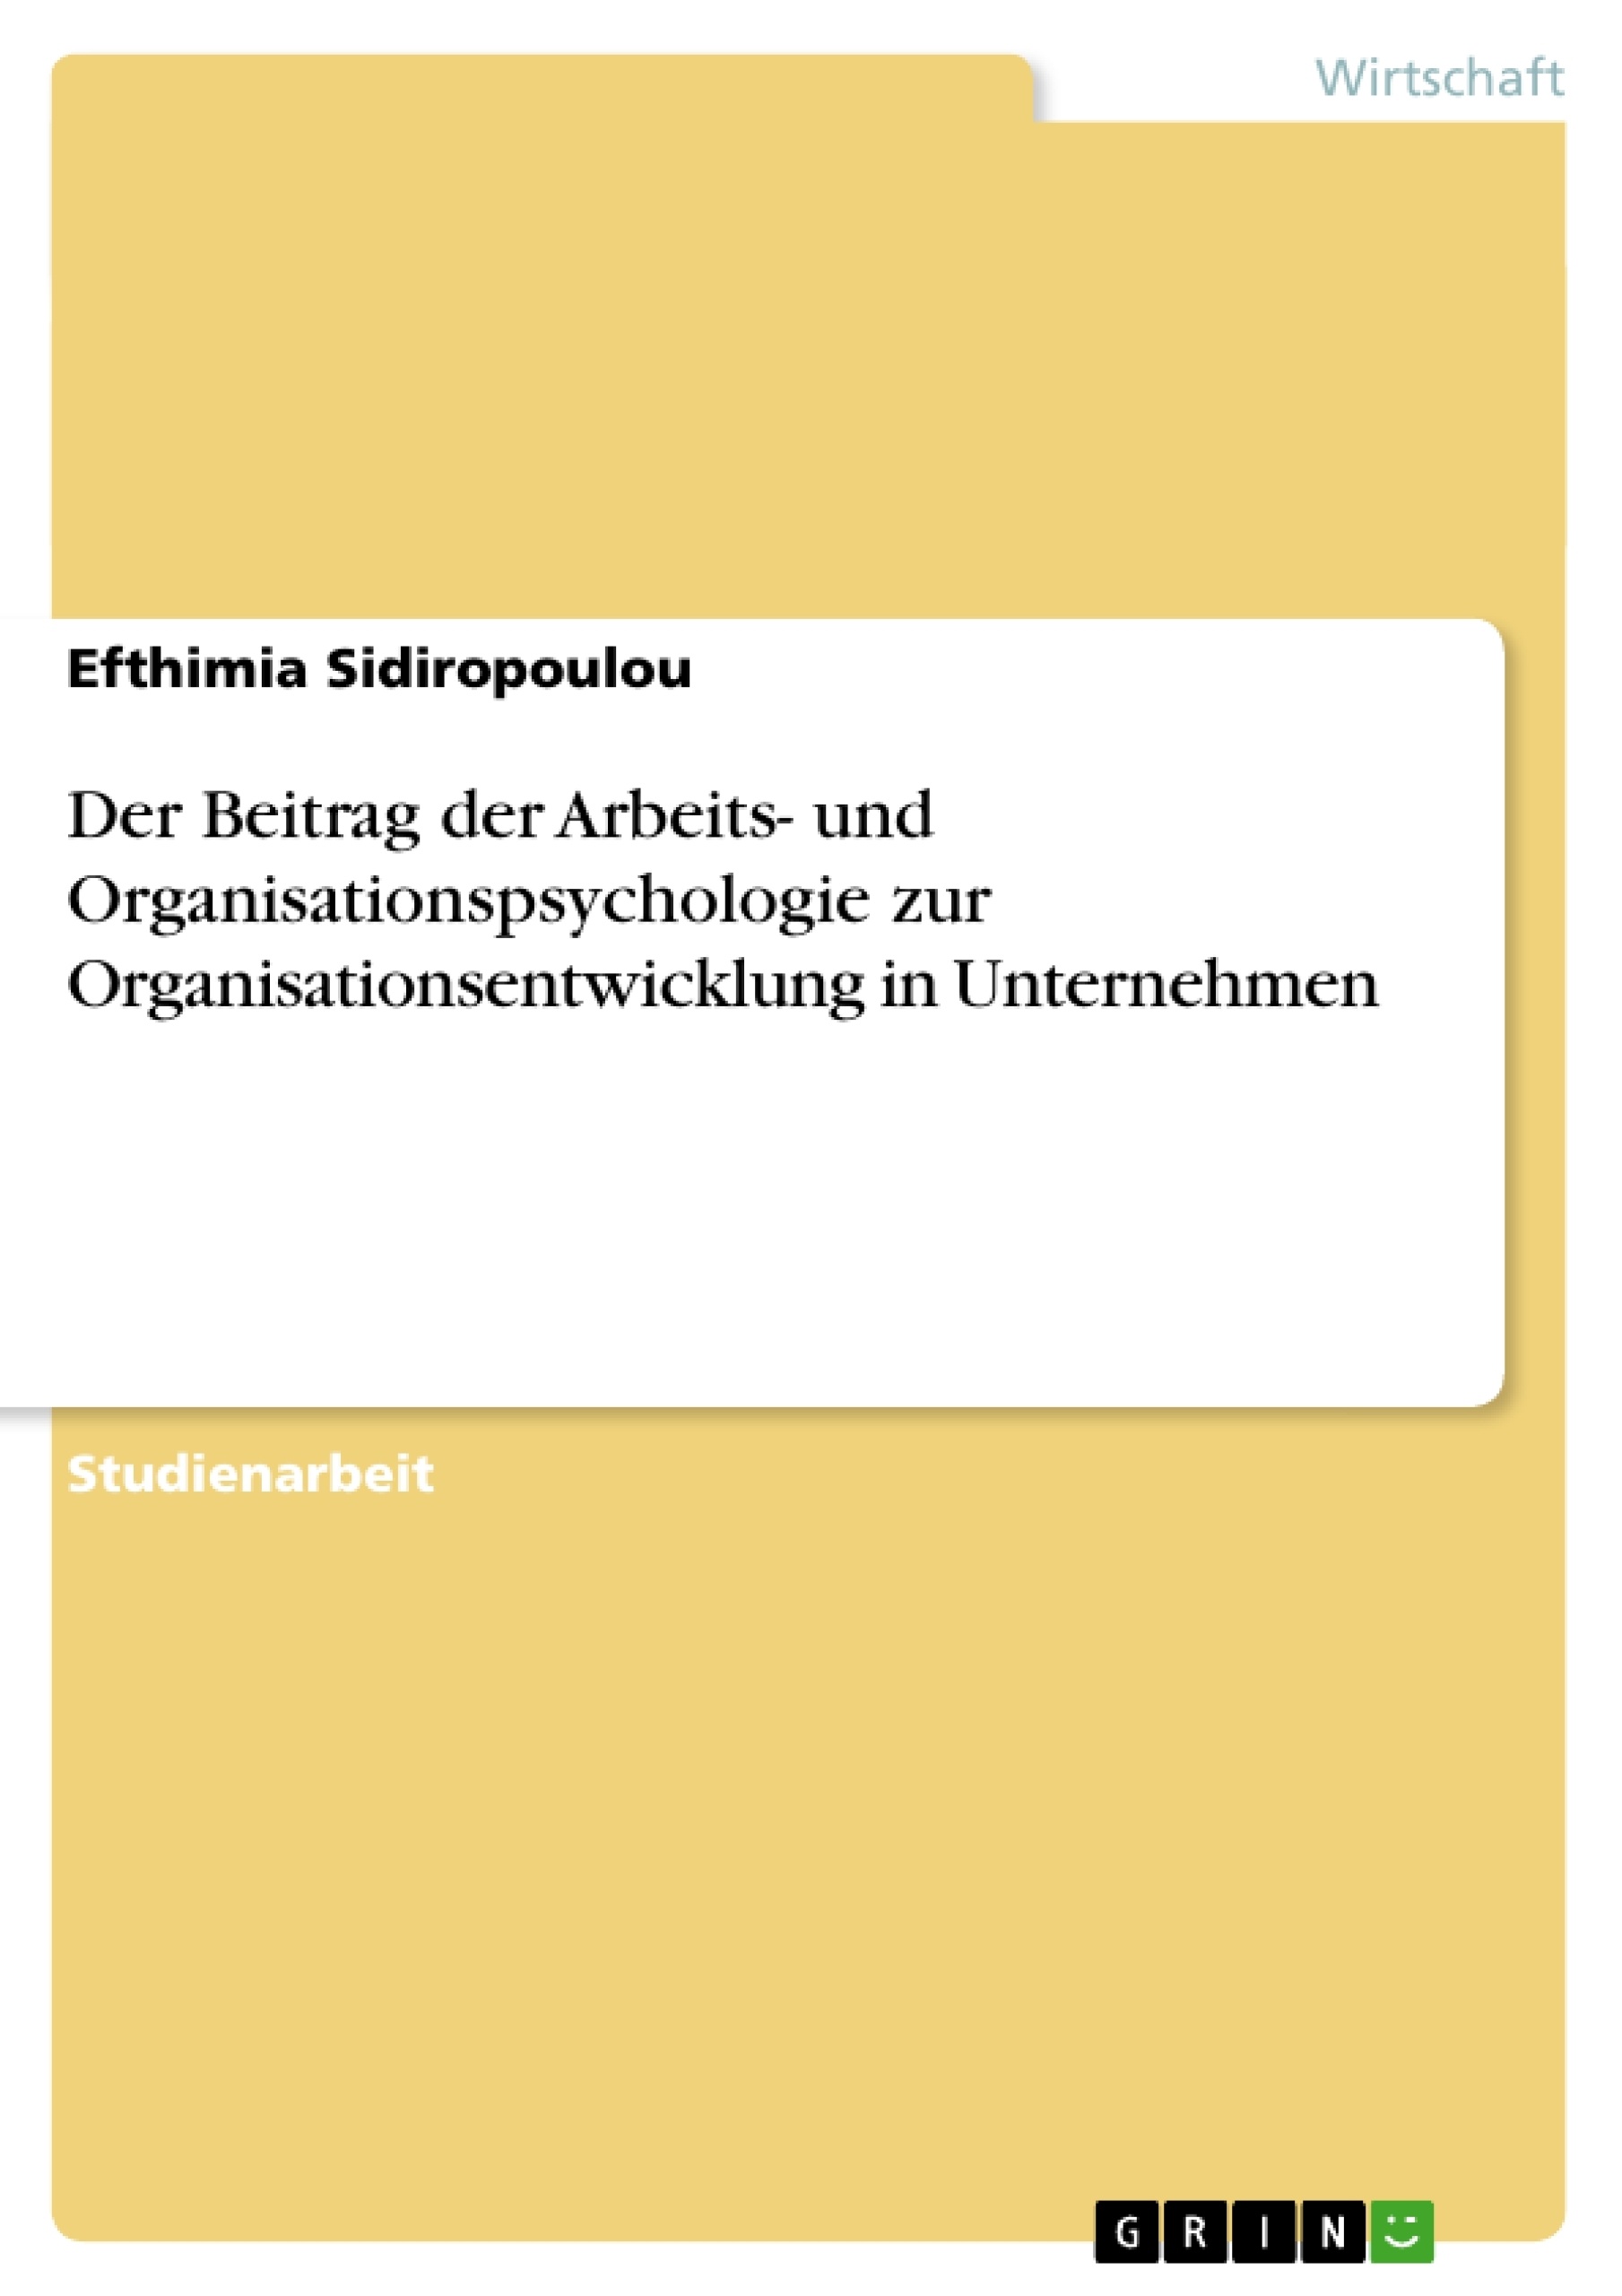 Title: Der Beitrag der Arbeits- und Organisationspsychologie  zur Organisationsentwicklung in  Unternehmen